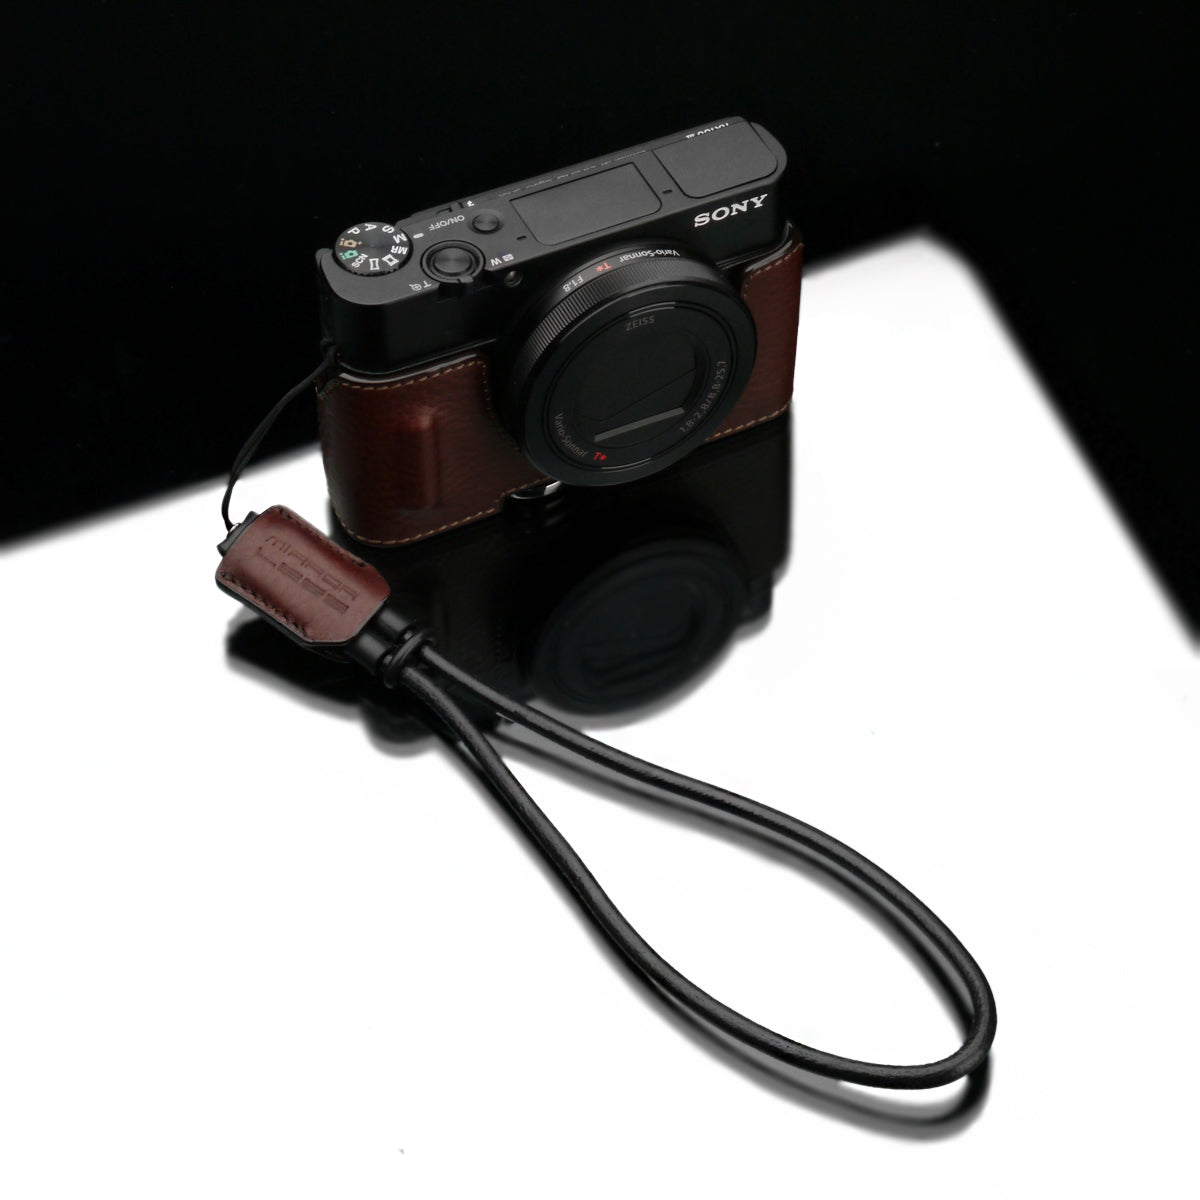 Gariz Mirrorless Camera Wrist strap by Genuine Leather XS-WSL2